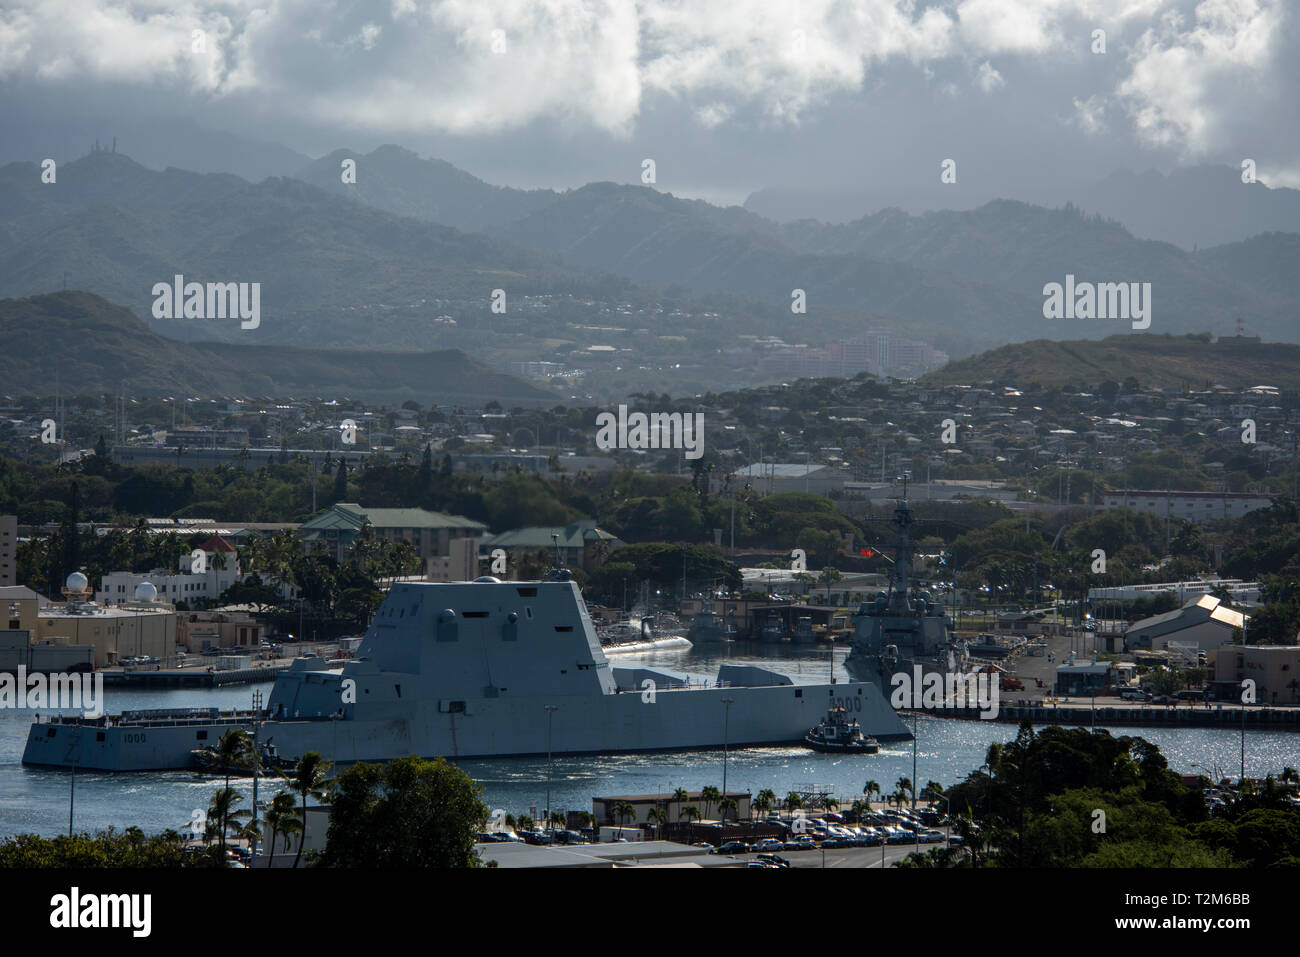 190402-N-QE566-0041 base conjunta de Pearl Harbor HICKAM (Abr. 2, 2019) -- El principal buque de la Marina de los EE.UU. la nueva clase de destructores de misiles guiados, USS Zumwalt (DDG 1000), llega a Pearl Harbor el 2 de abril. Durante la visita, puerto programado Zumwalt realizará encuentros con autoridades locales y organizaciones. Zumwalt se encuentra bajo el control operacional de los EE.UU. 3ª Flota. Tercera Flota conduce a todas las fuerzas navales en el Pacífico y proporciona la formación necesaria realistas, pertinentes para una eficaz marina mundial. Tercera Flota coordina con EE.UU. 7ª Flota a planificar y ejecutar misiones basadas en sus complemen Foto de stock